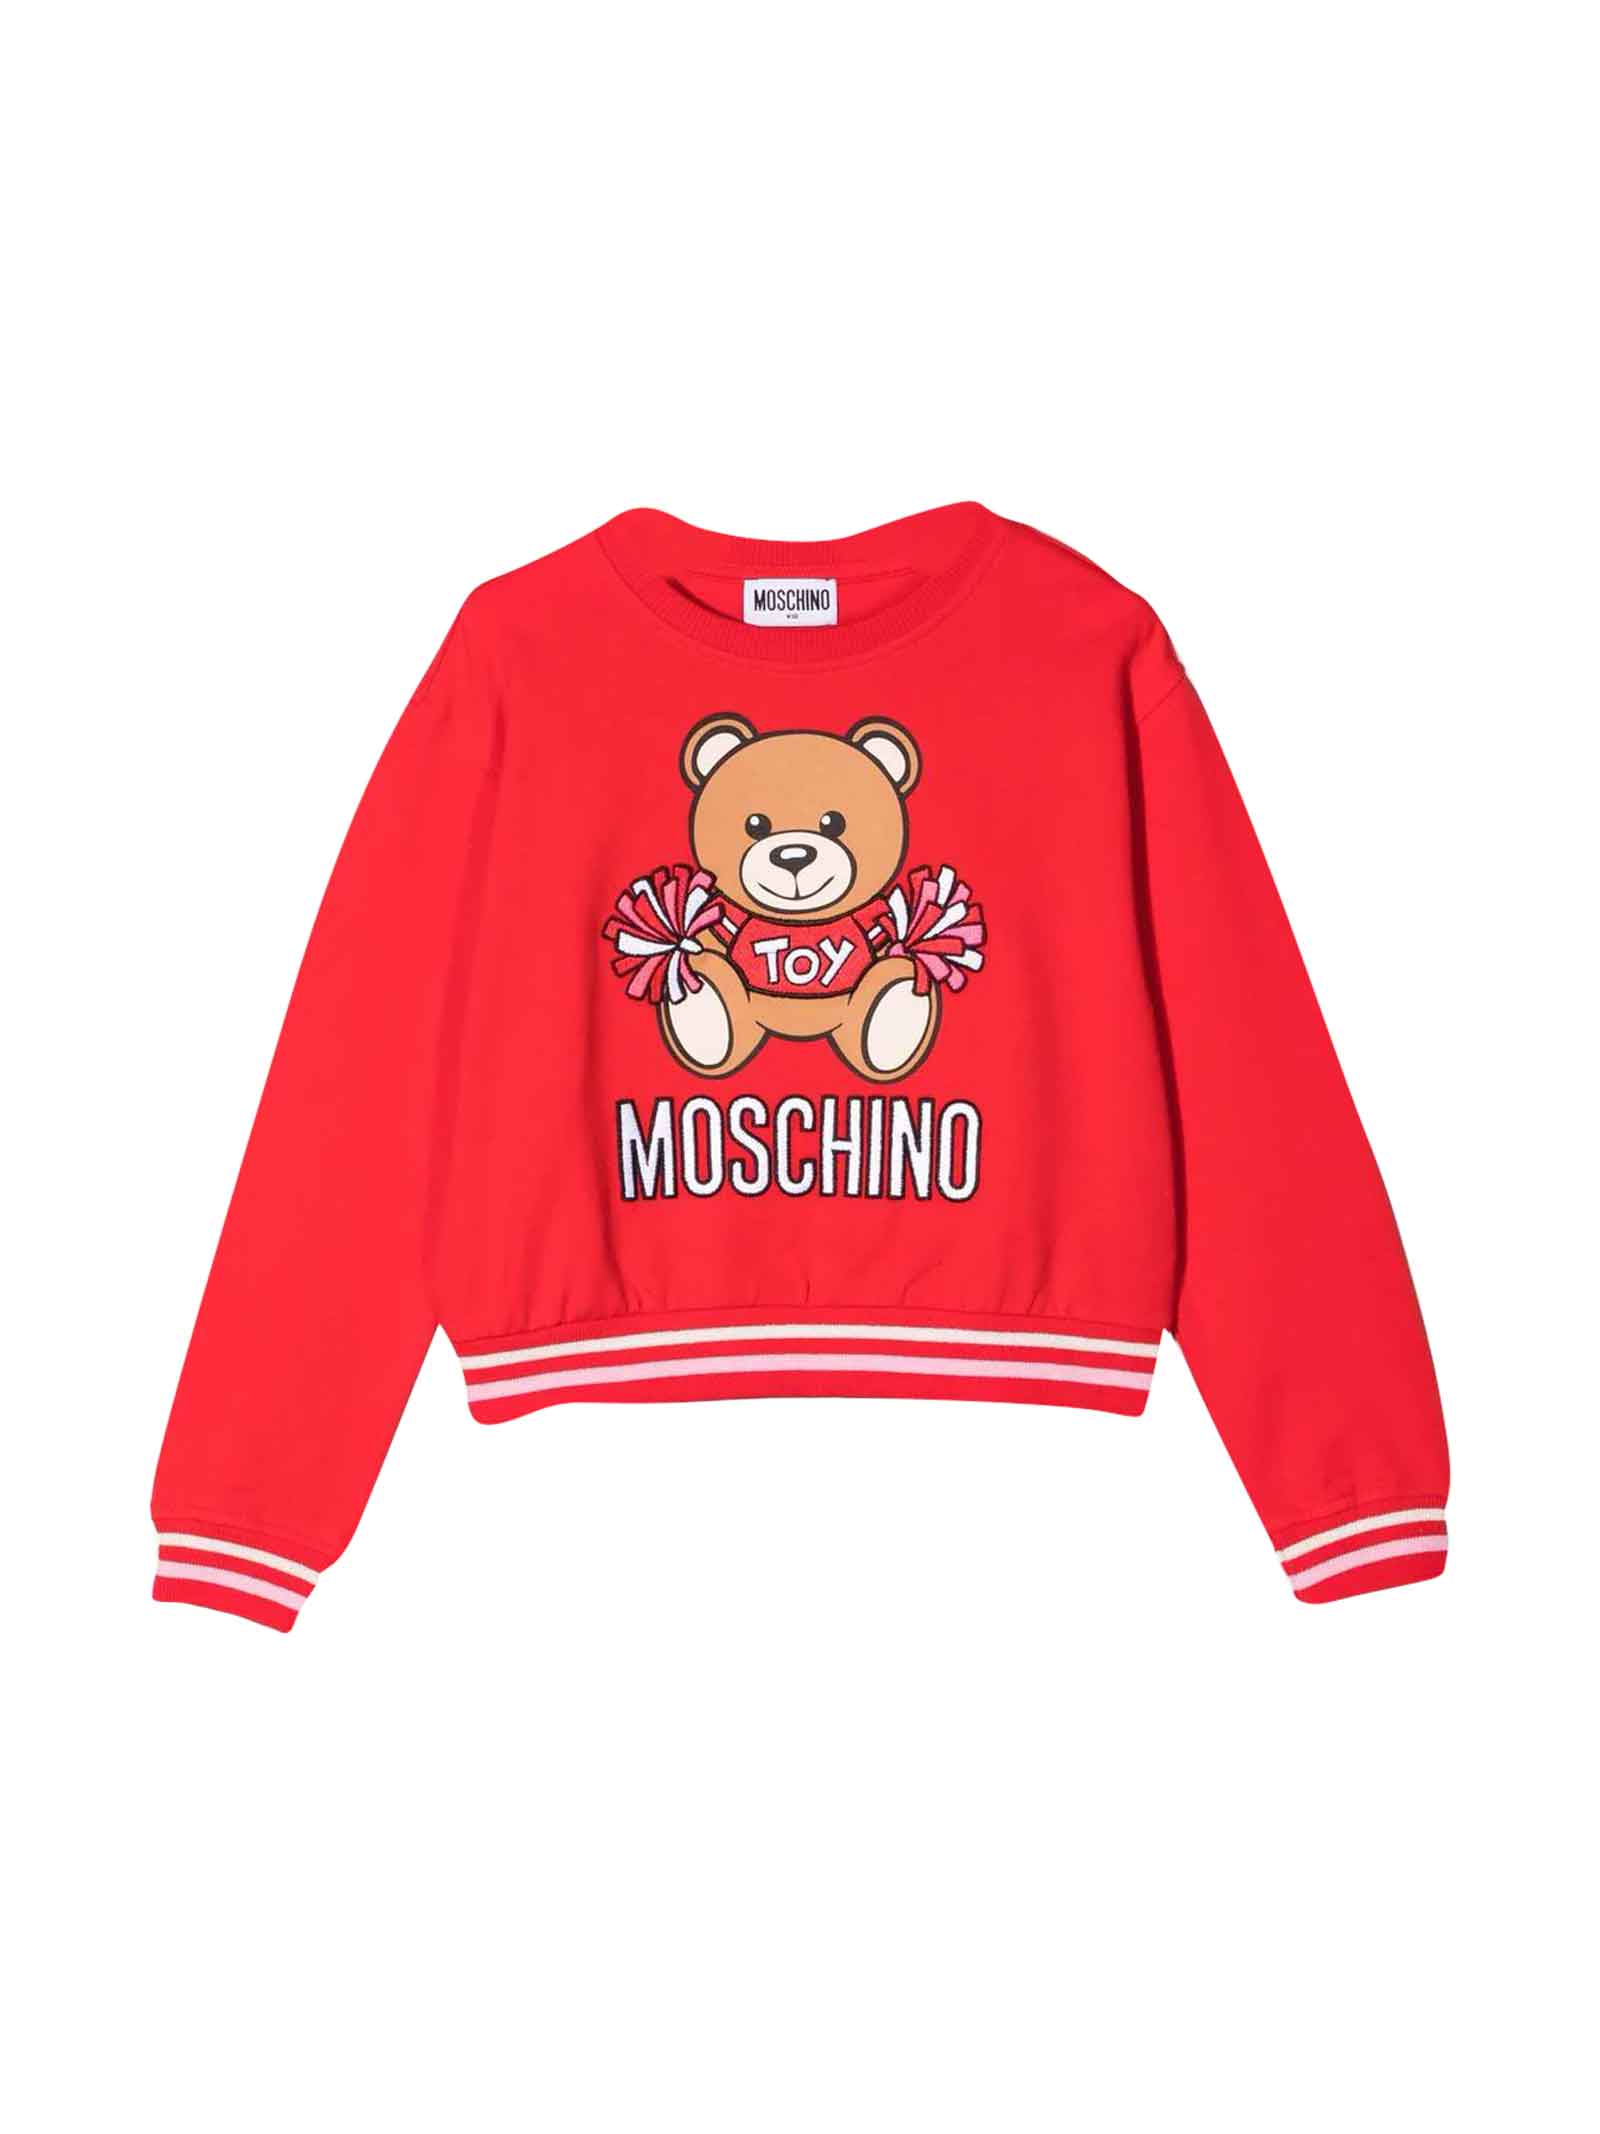 Moschino Unisex Red Sweatshirt